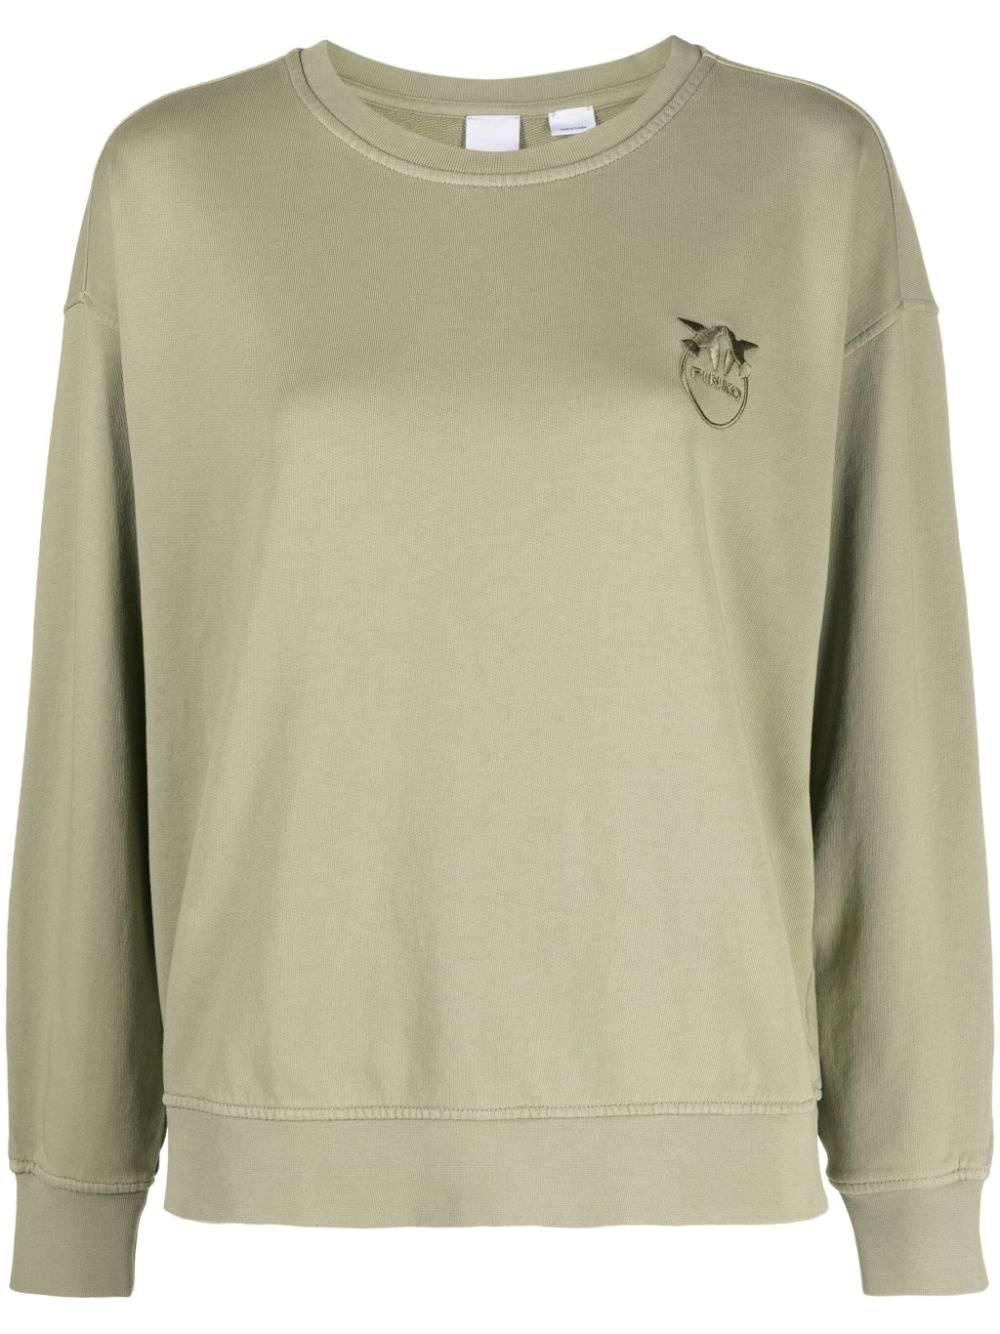 Love Birds embroidered cotton sweatshirt - 1